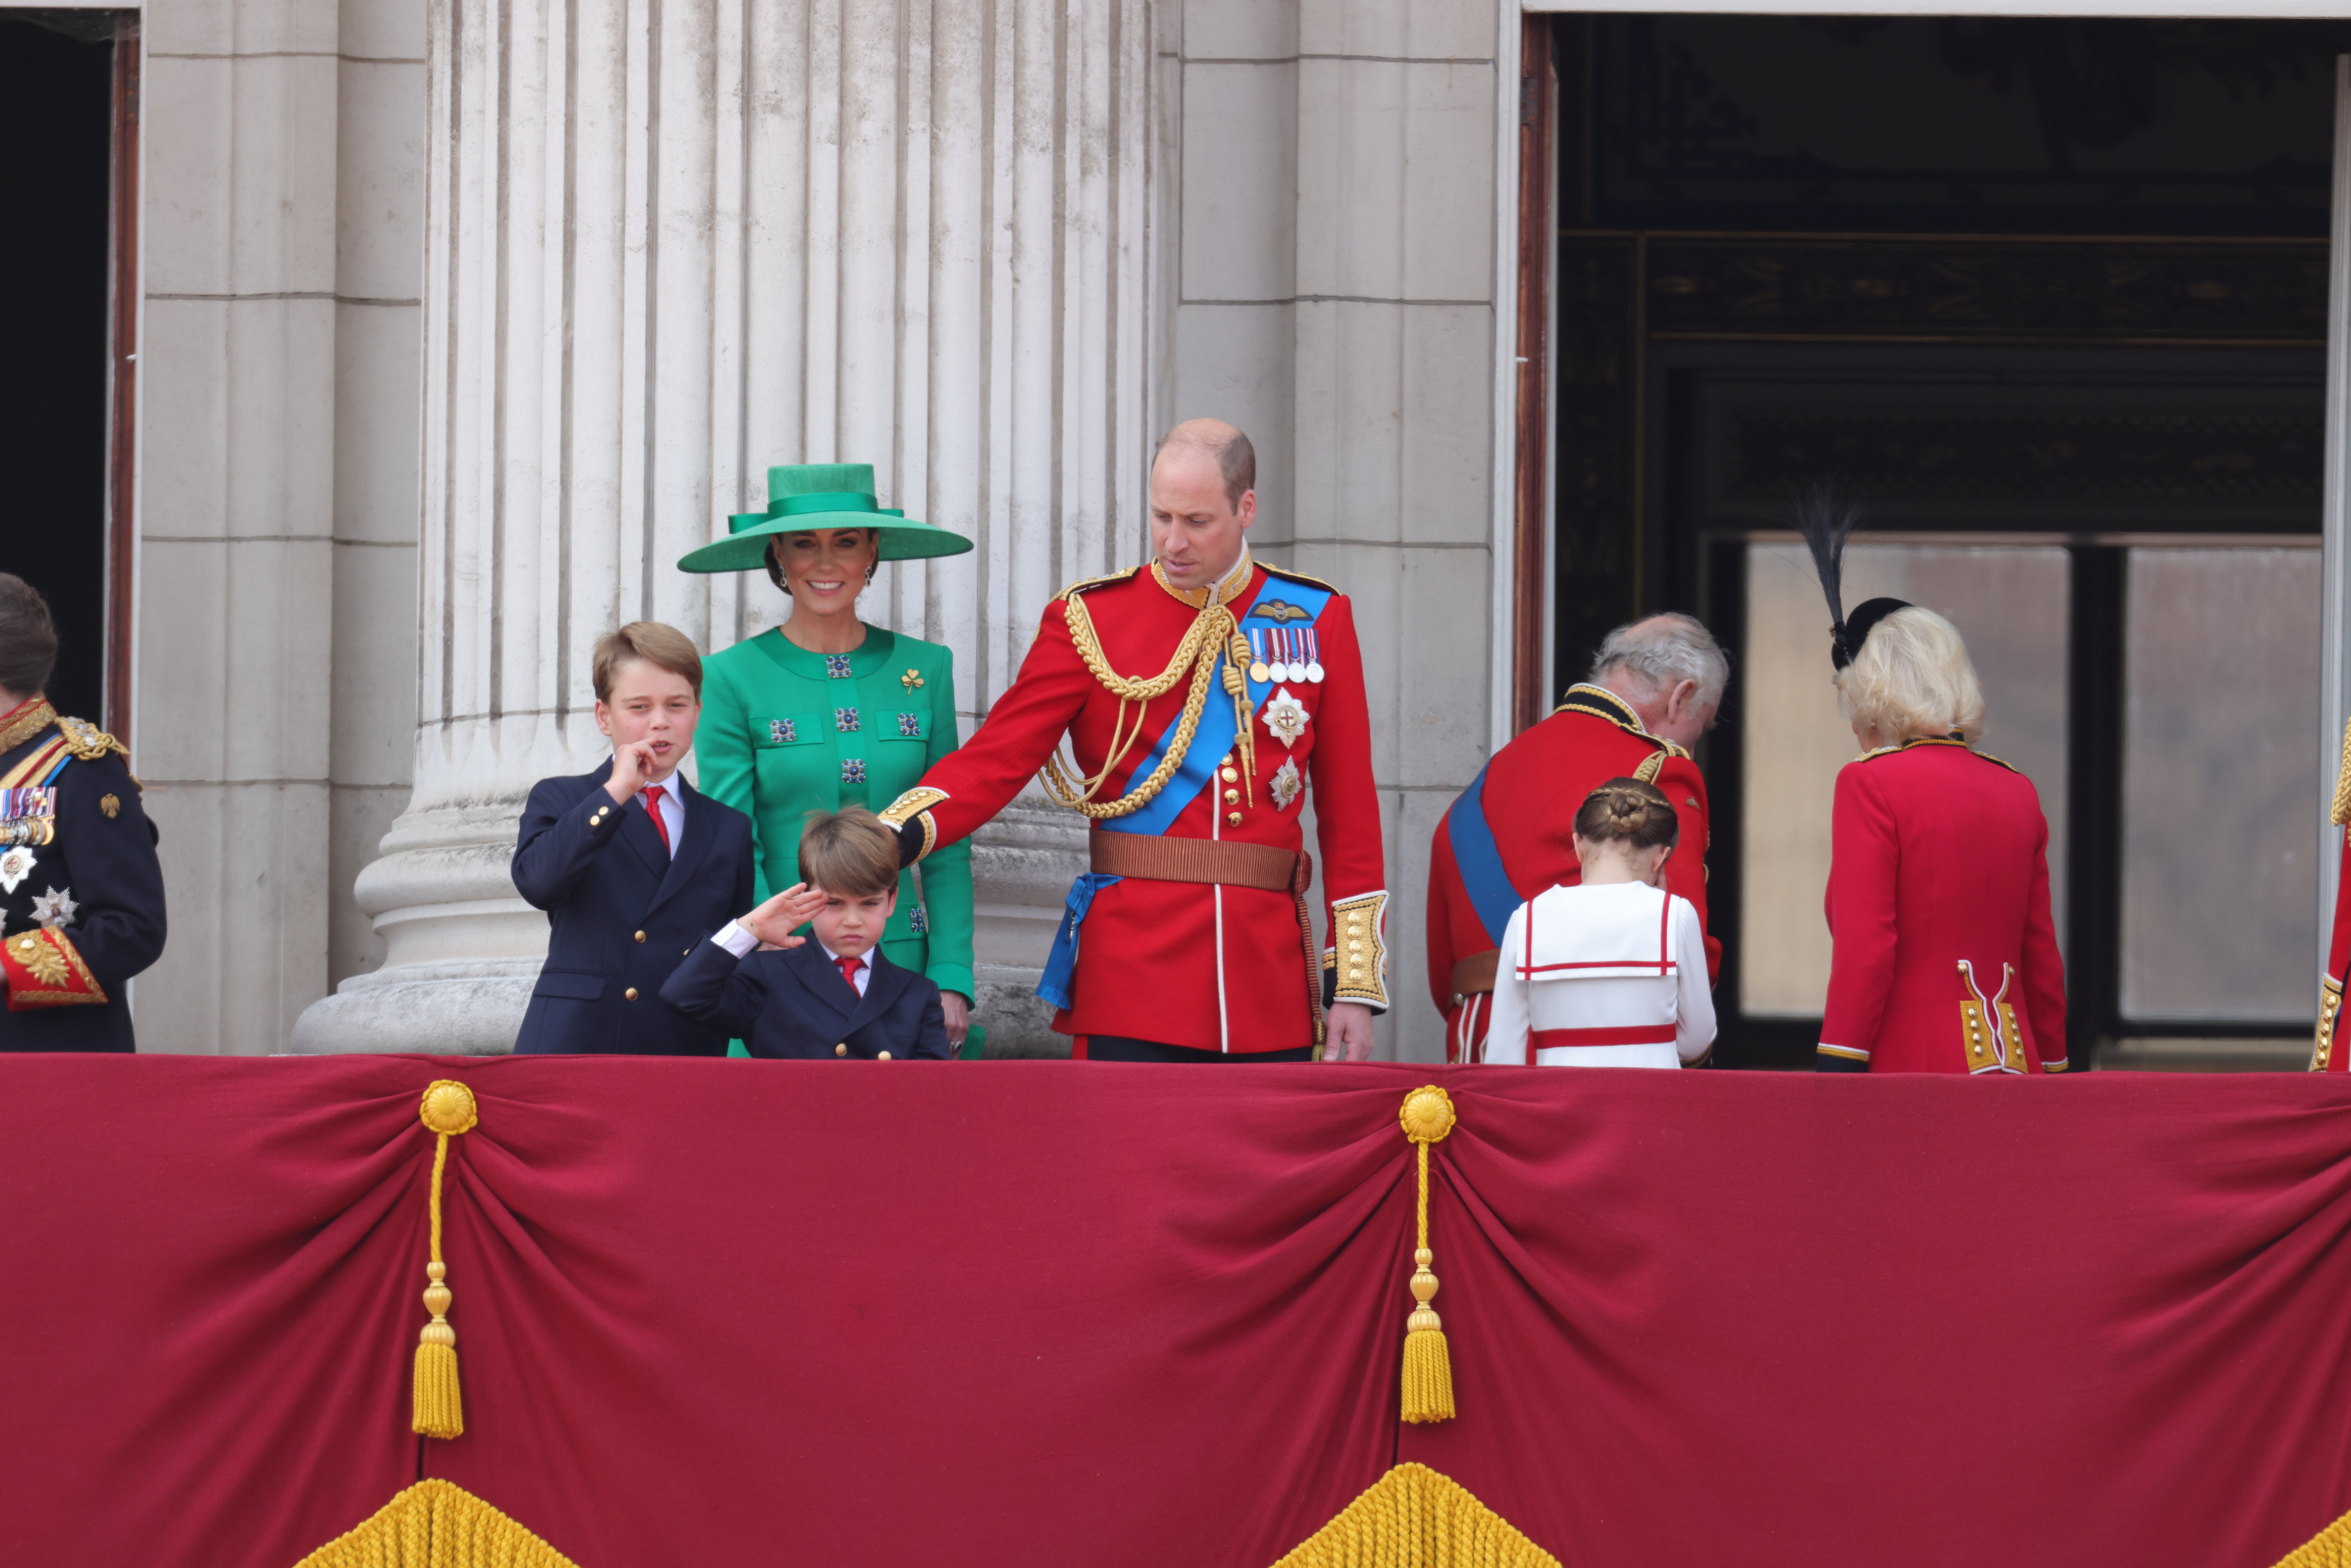 Prinz William trat vor, um bei der Betreuung der Kinder zu helfen, als er zu seiner Familie auf den Balkon zurückkehrte